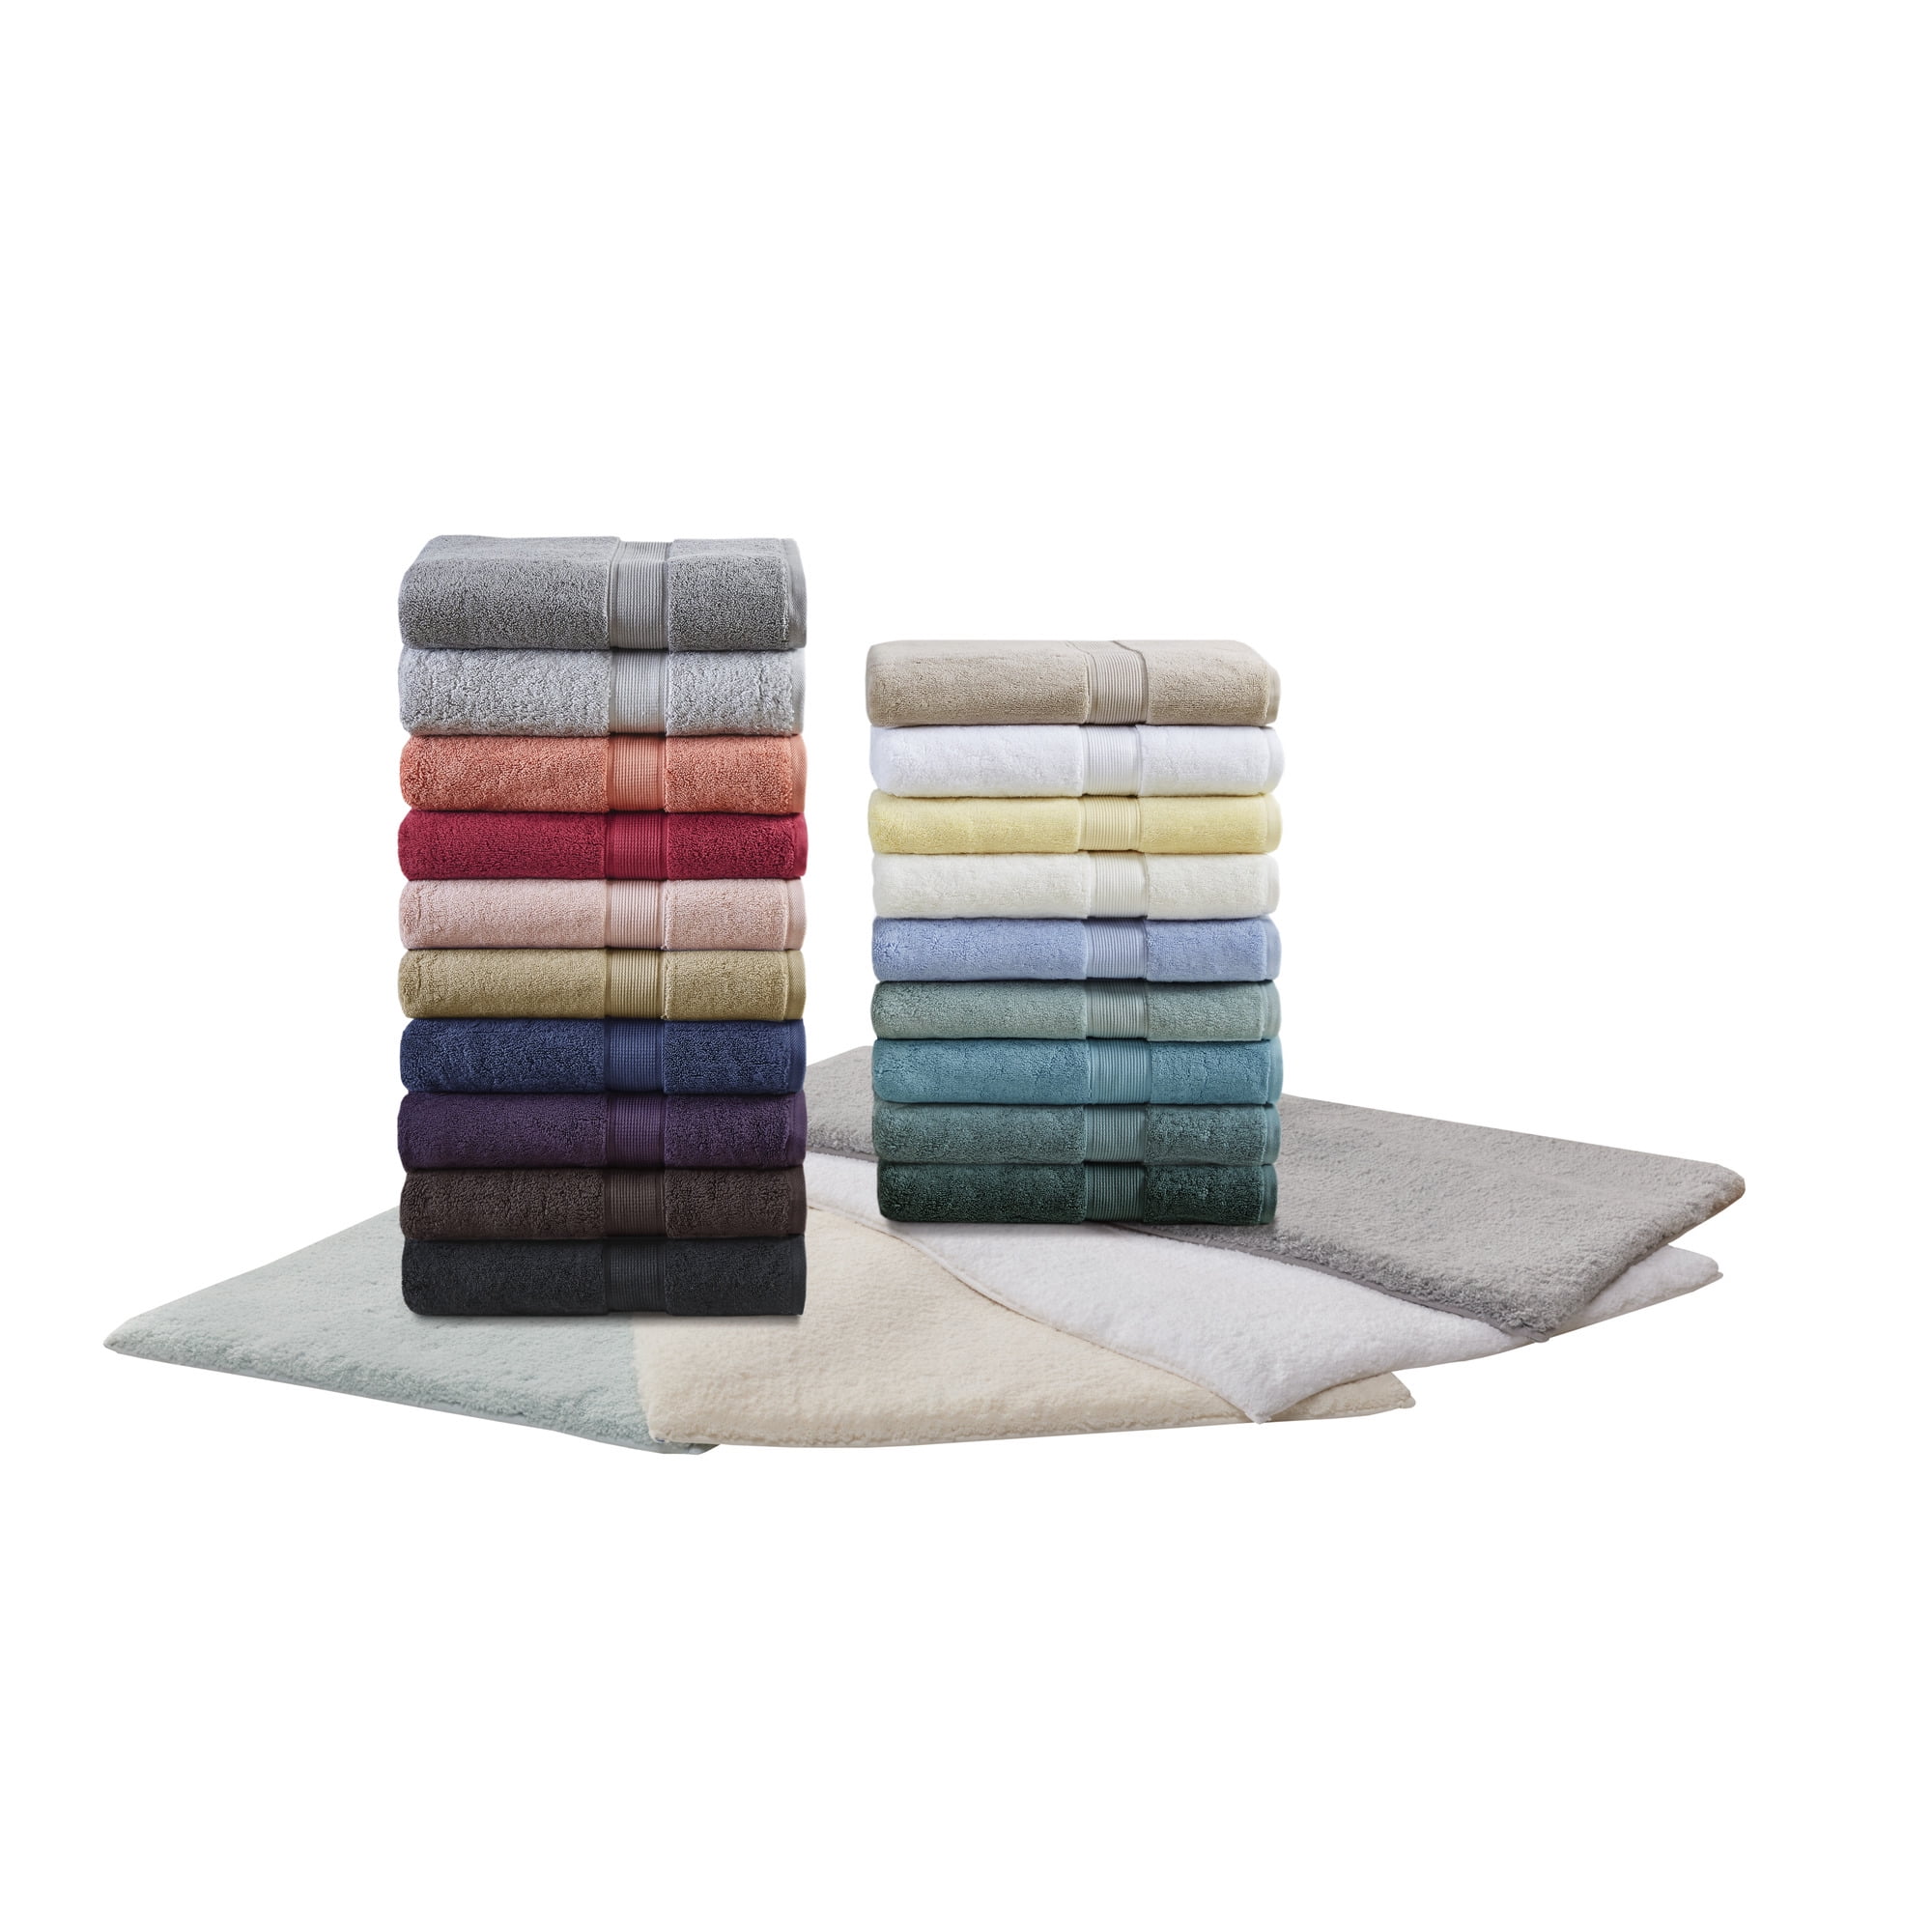 Home Essence 800gsm 100% Cotton Bath Sheet Antimicrobial 2 Piece Set, Aqua,  34x68 